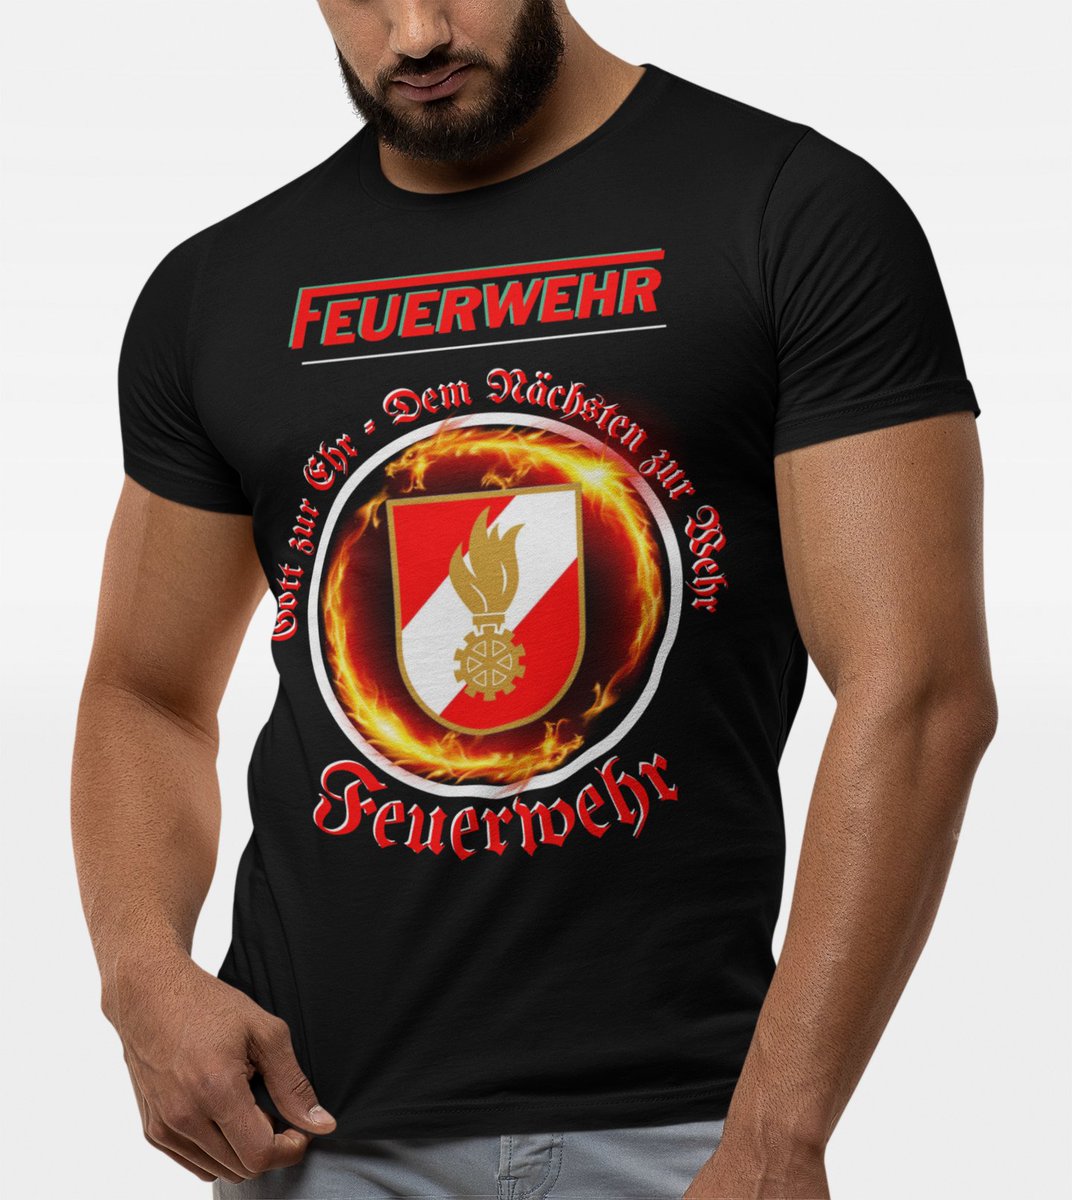 💚Wer braucht dieses T-Shirt ???💚
⚠️Jetzt nur 24 Euro⚠️
😍VERSANDKOSTENFREI !!!! 😍
.
#tshirt #personalisiertesGeschenk #Souverista #VerdientGefundenZuWerden #weihnachten #tshirtdruck #tshirtstore #tshirtstyle #tshirtdesign
.
► SHOP: bit.ly/SOUVERISTA-SHOP